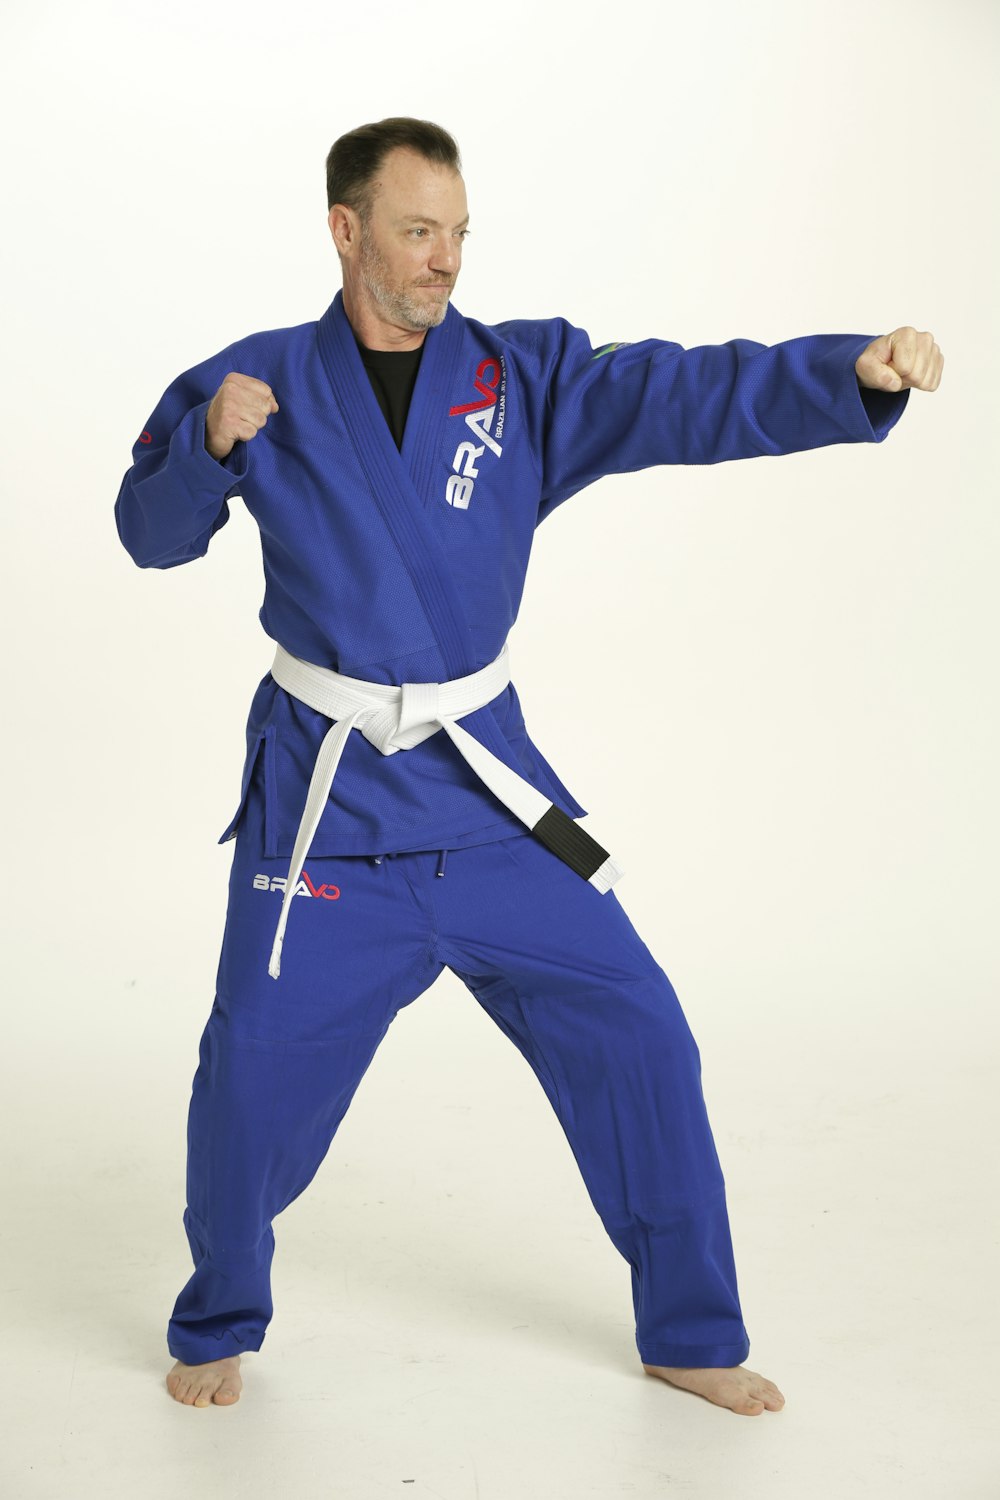 Ein Mann im blauen Karateanzug posiert für ein Foto